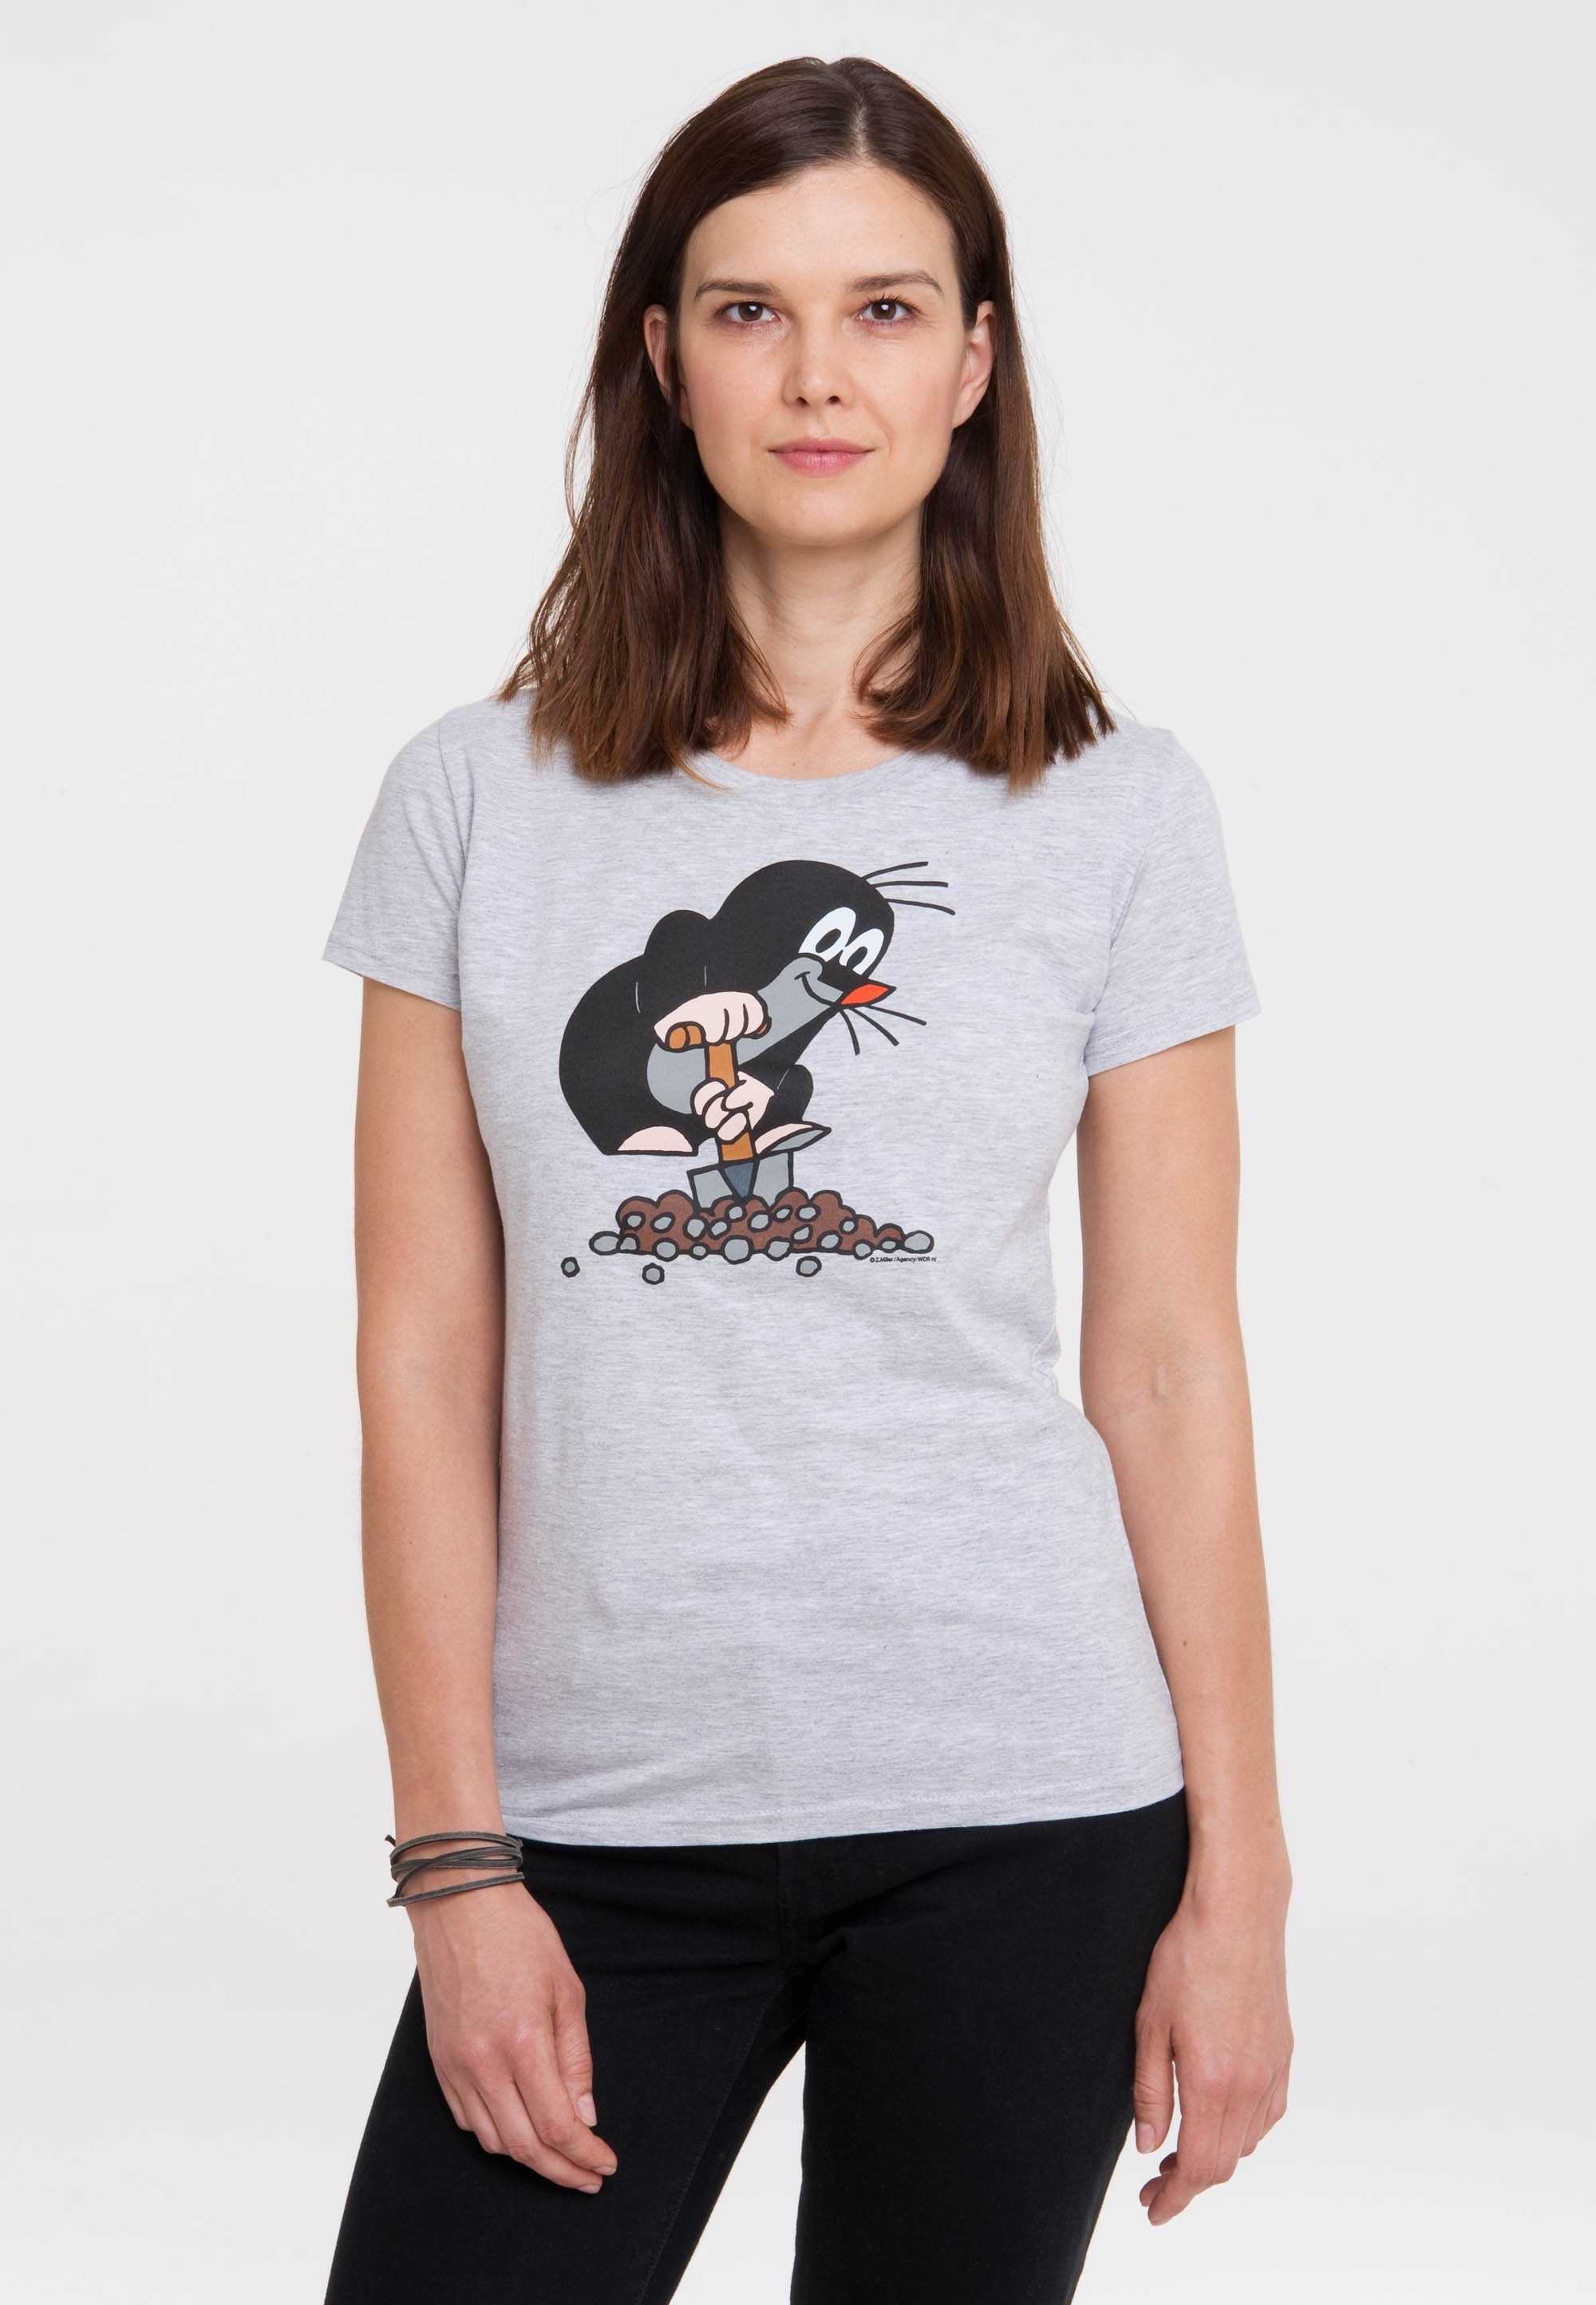 LOGOSHIRT T-Shirt Der kleine Maulwurf Originaldesign, gefertigt im reiner Aus Baumwolle mit Fit-Schnitt Slim lizenziertem